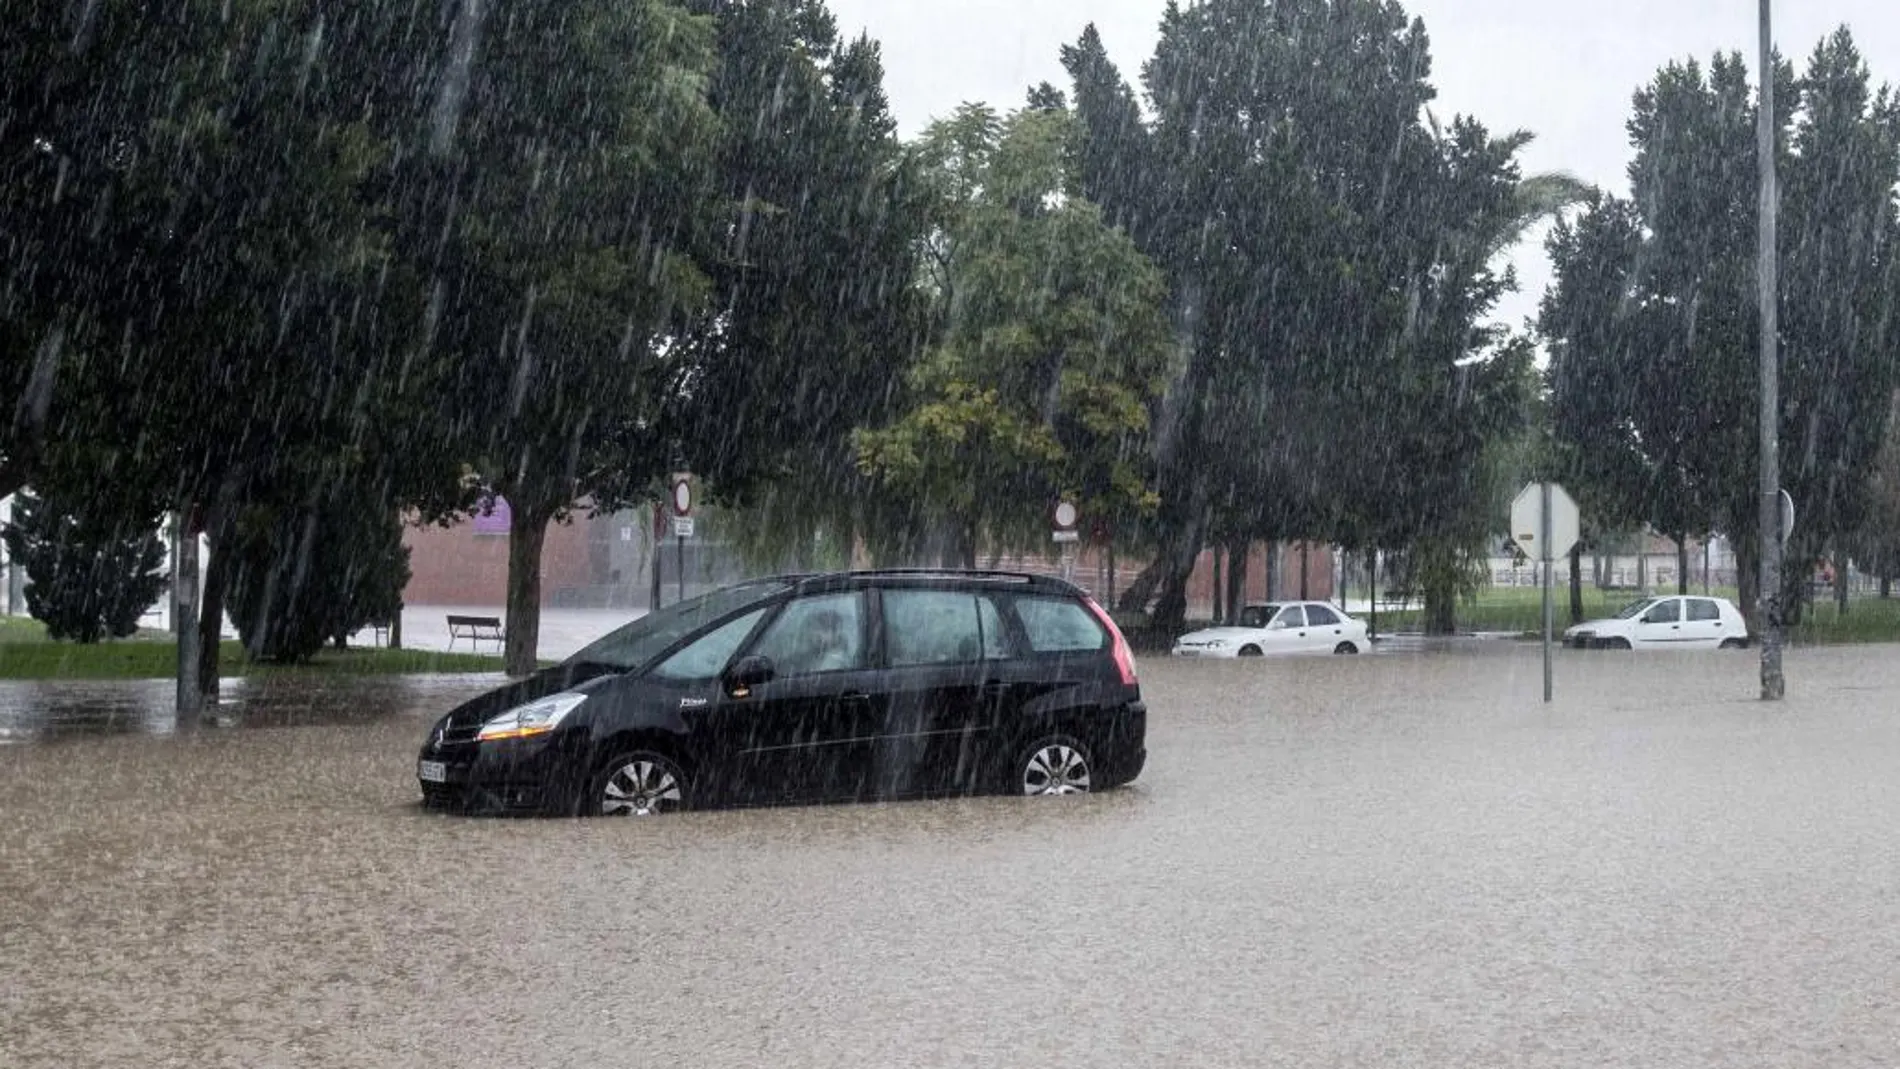 Un vehículo en medio de la intensa lluvia caída esta mañana en la pedanía murciana de la Alberca (Murcia), que ha obligado a cortar distintos viales del municipio de Murcia